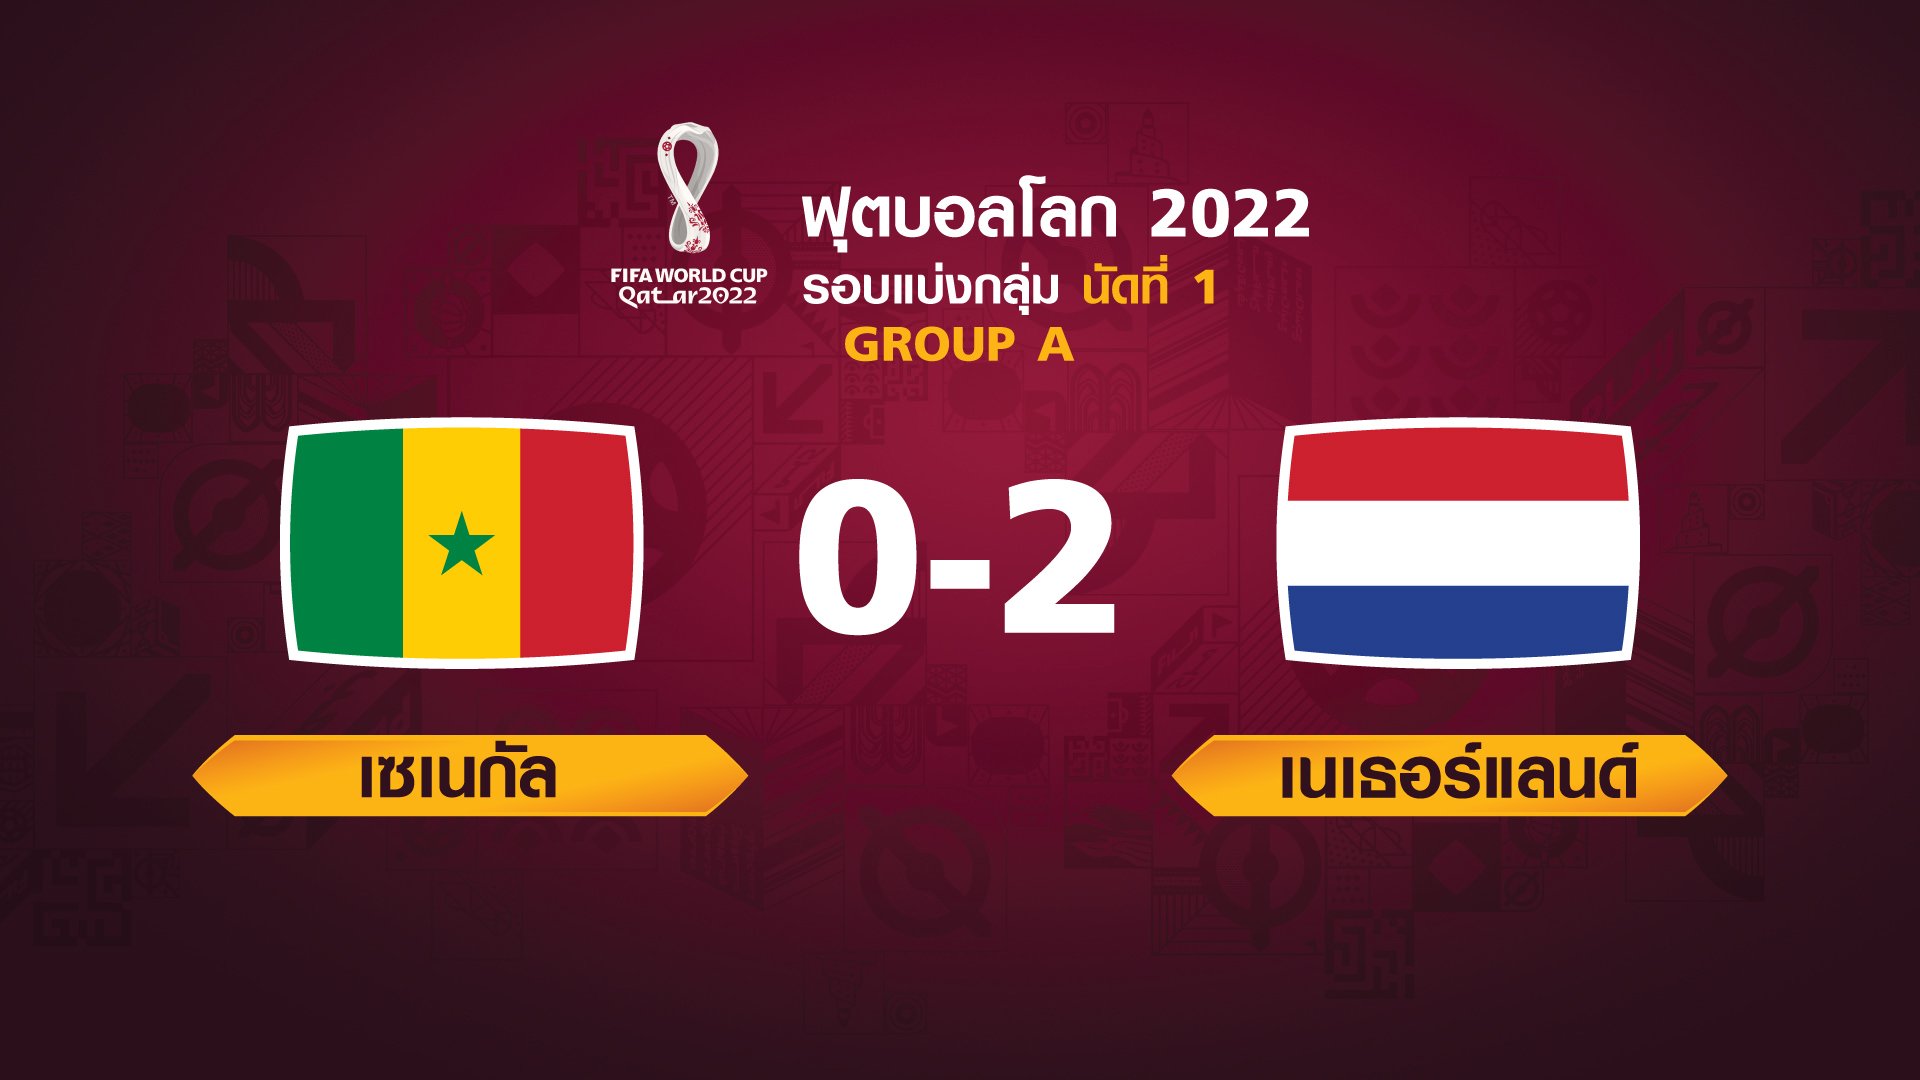 ฟุตบอลโลก 2022 รอบแบ่งกลุ่ม นัดแรก ระหว่าง Senegal vs Netherlands